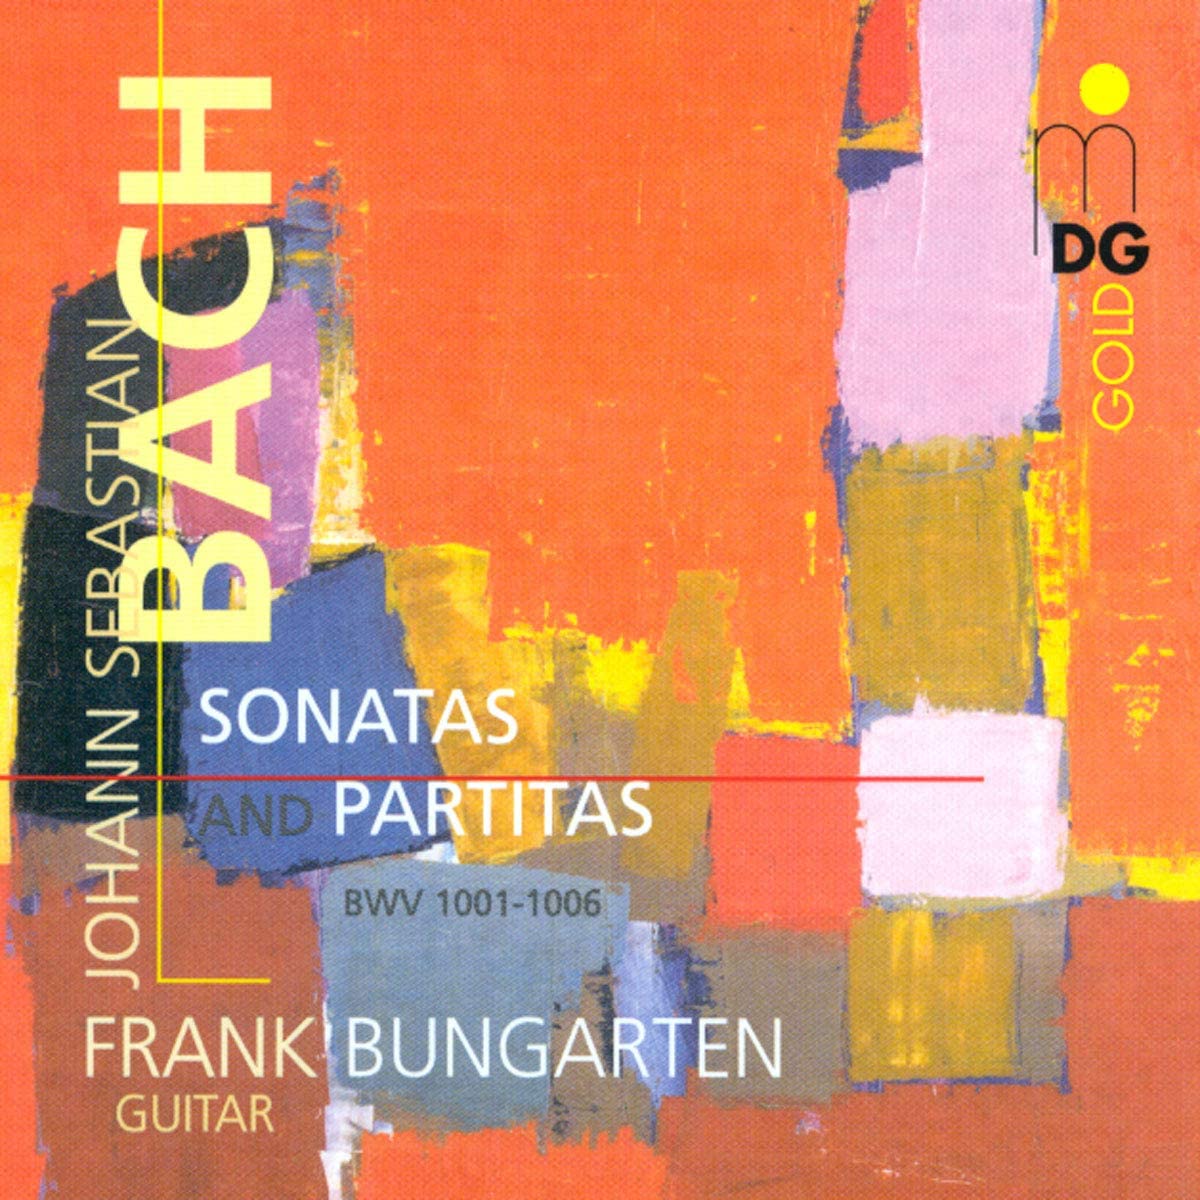 BACH: Sonatas and Partitas BWV 1001-1006 for guitar